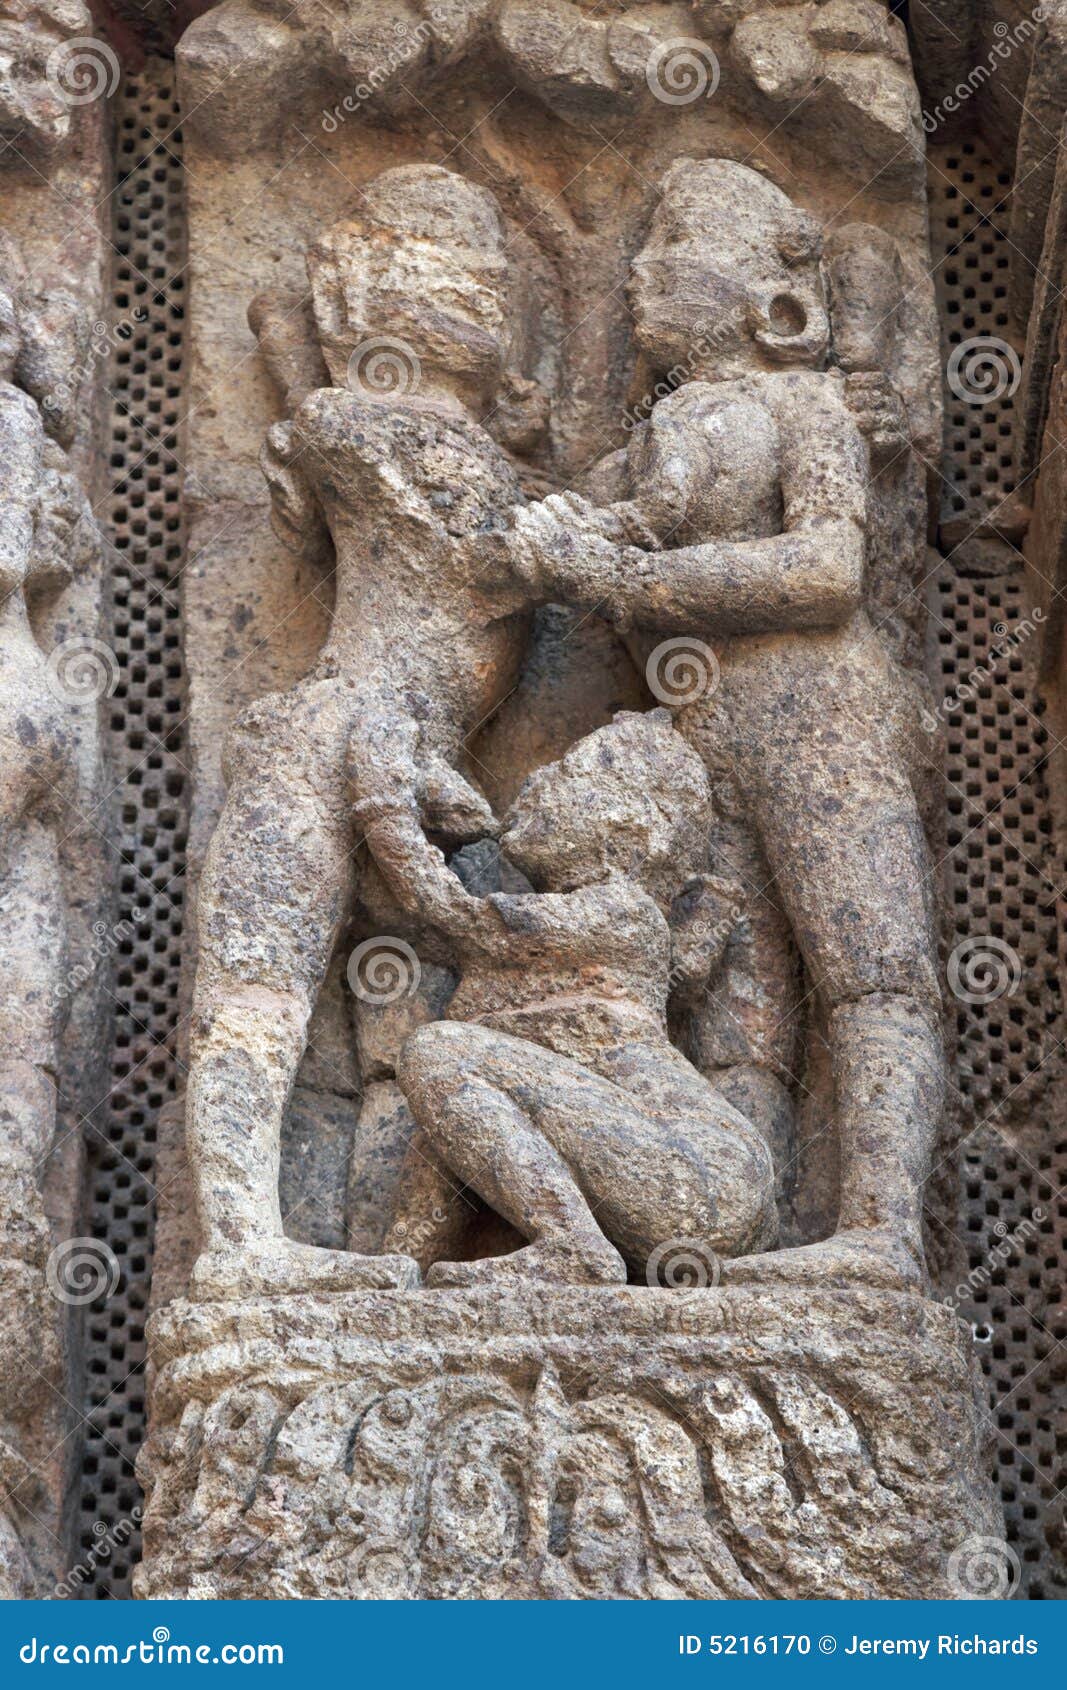 [Image: erotic-carving-konark-temple-5216170.jpg]